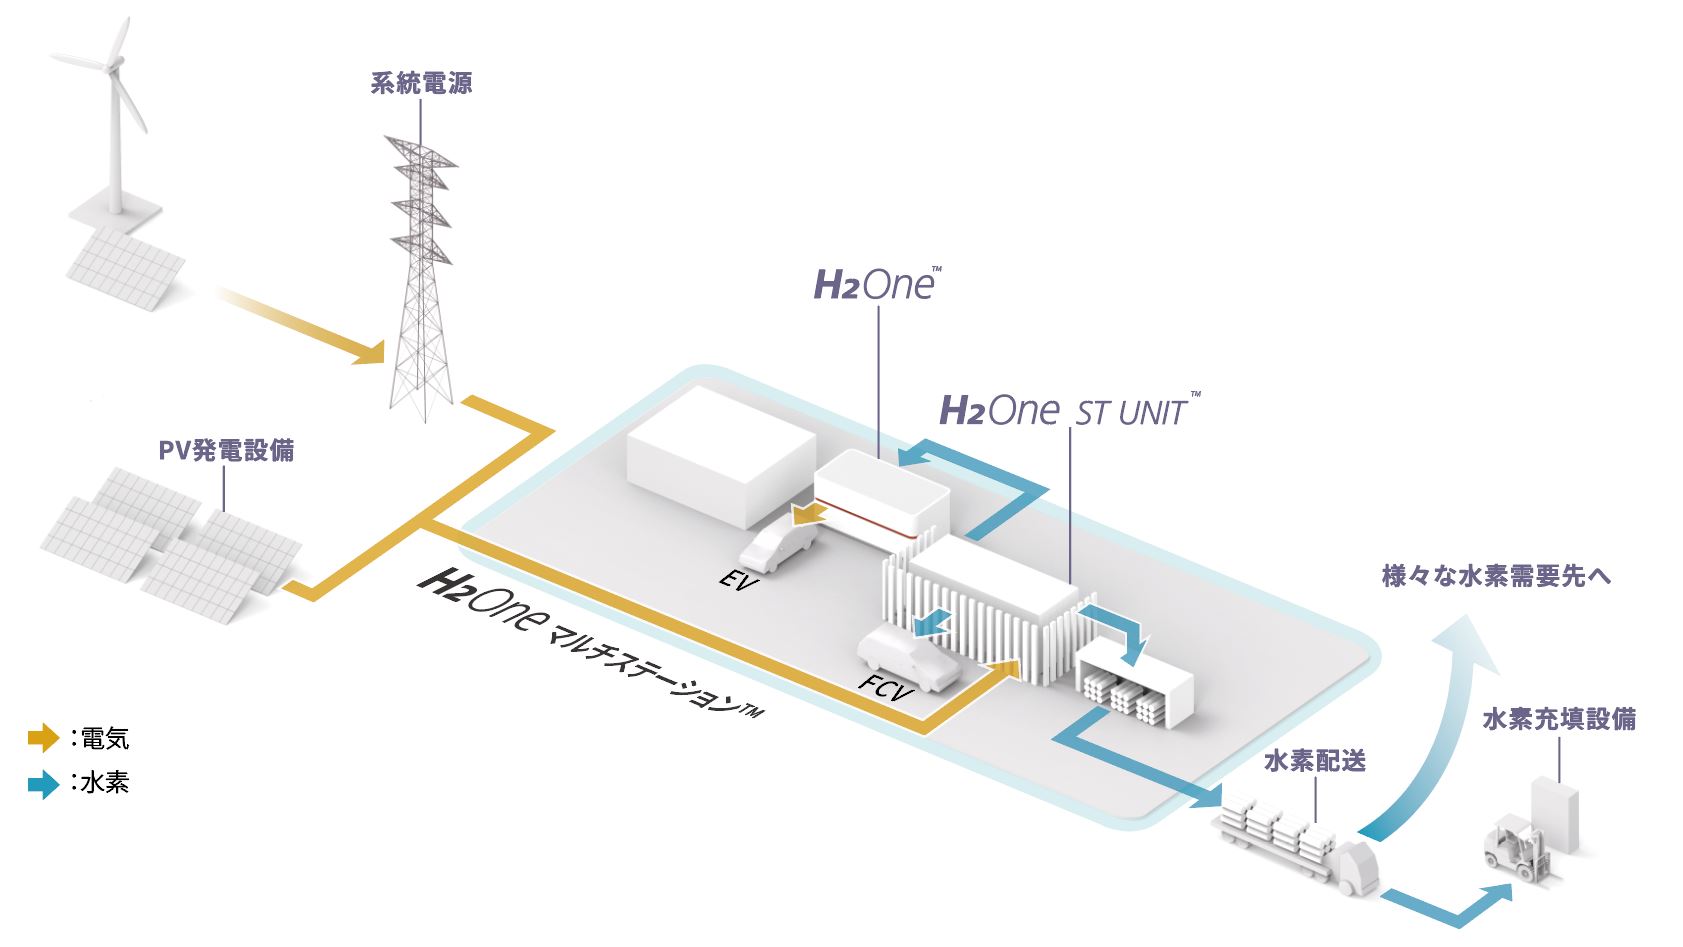 「H2Oneマルチステーション™」を活用した水素サプライチェーンモデルのイメージ